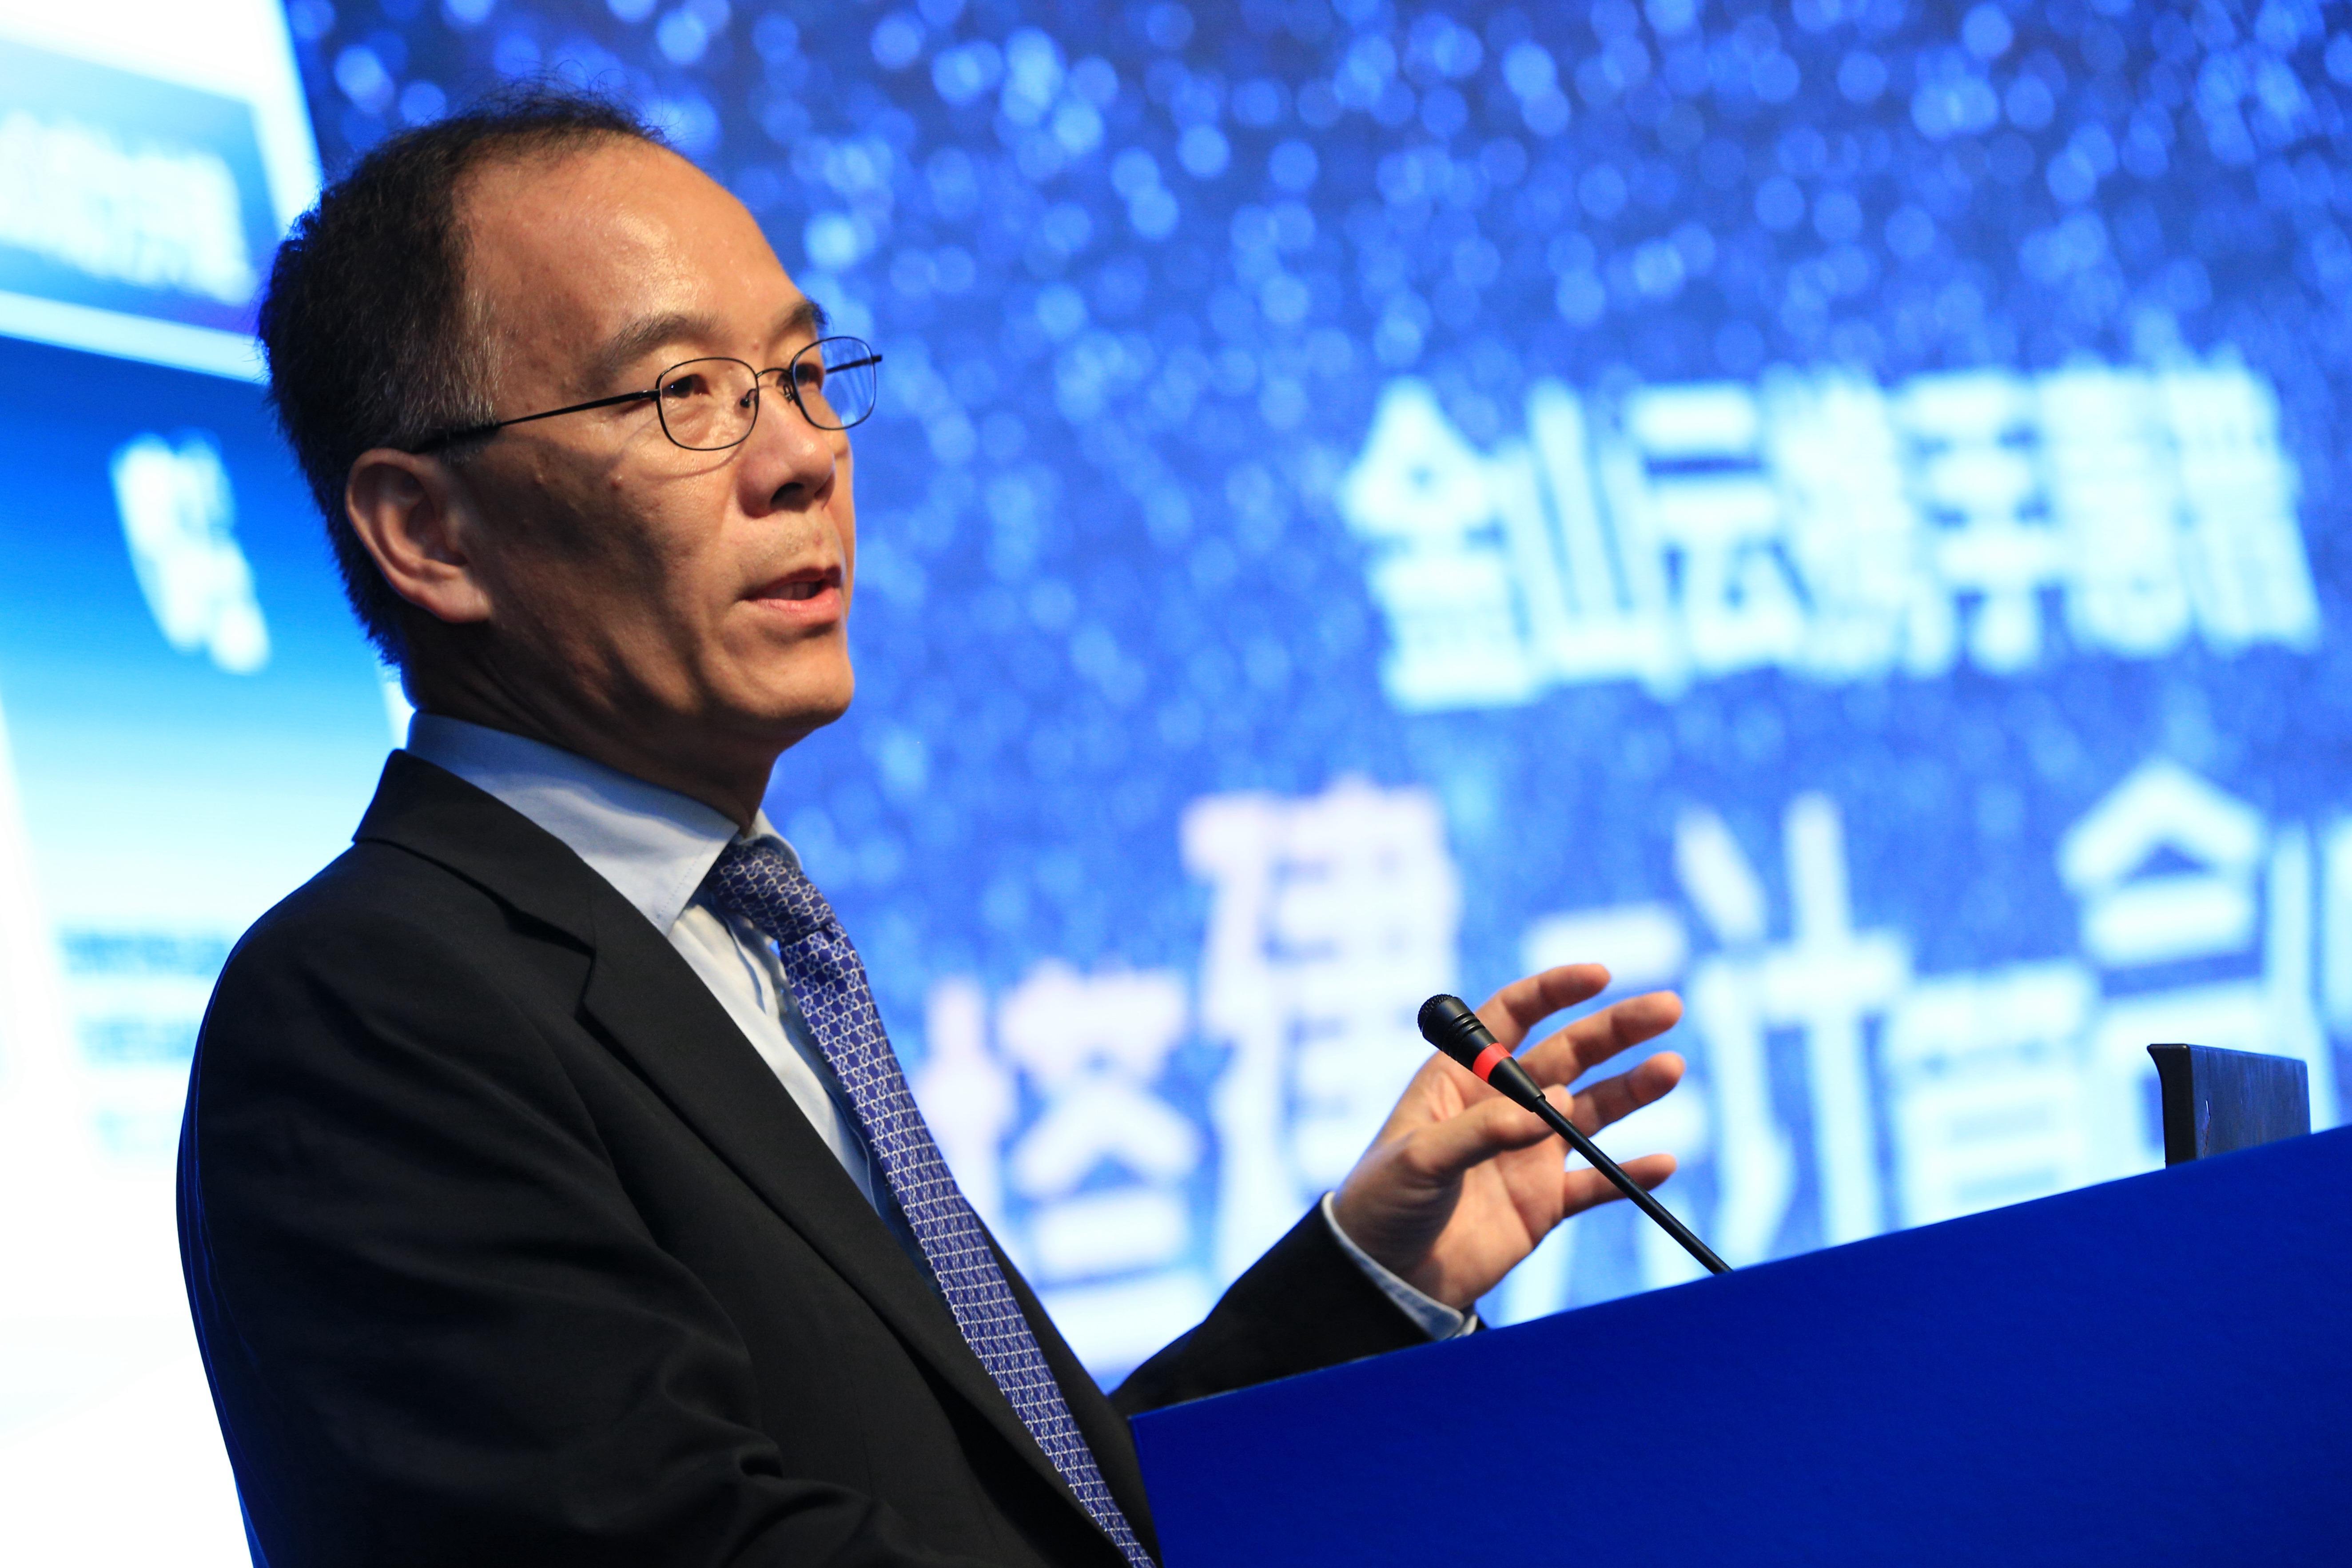 دکتر هونگجیانگ ژانگ، مدیر عامل Kingsoft و مدیر عامل سابق مرکز فناوری پیشرفته مایکروسافت (ATC)، در چهاردهمین کنفرانس اینترنتی چین (CIC) در پکن، چین شرکت می کند.